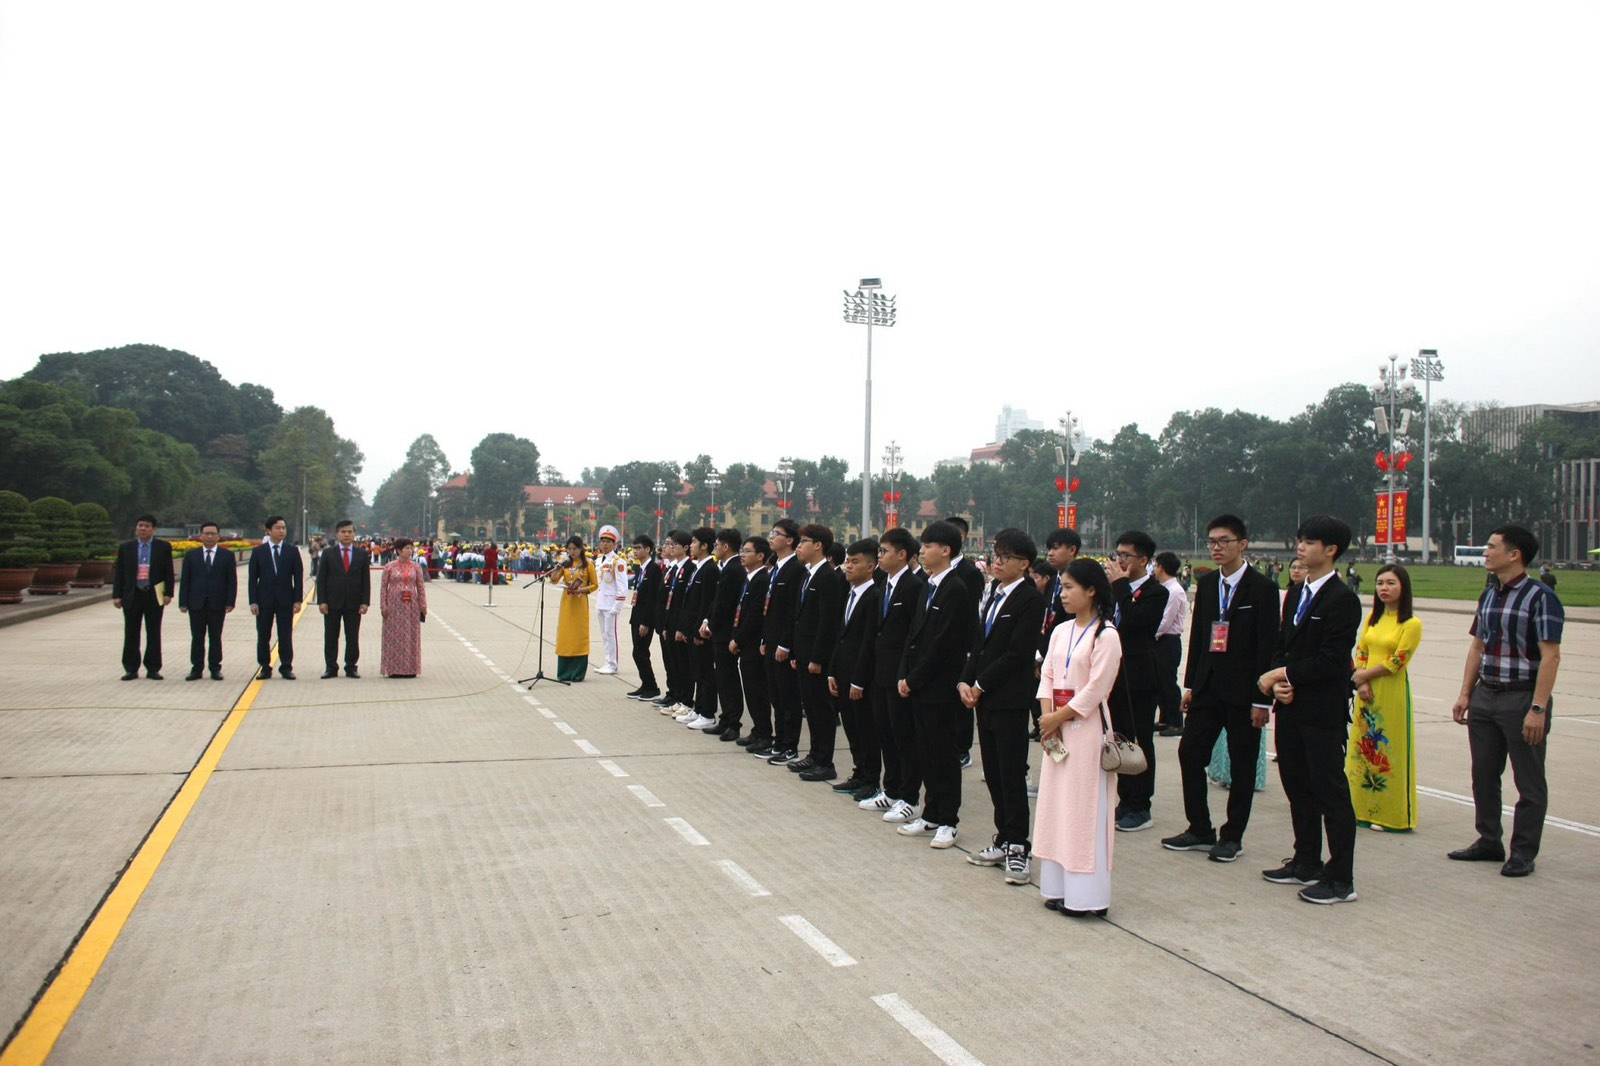 Đoàn học sinh đoạt giải Olympic và Khoa học kỹ thuật quốc tế năm 2023 báo công tại Lăng Chủ tịch Hồ Chí Minh.